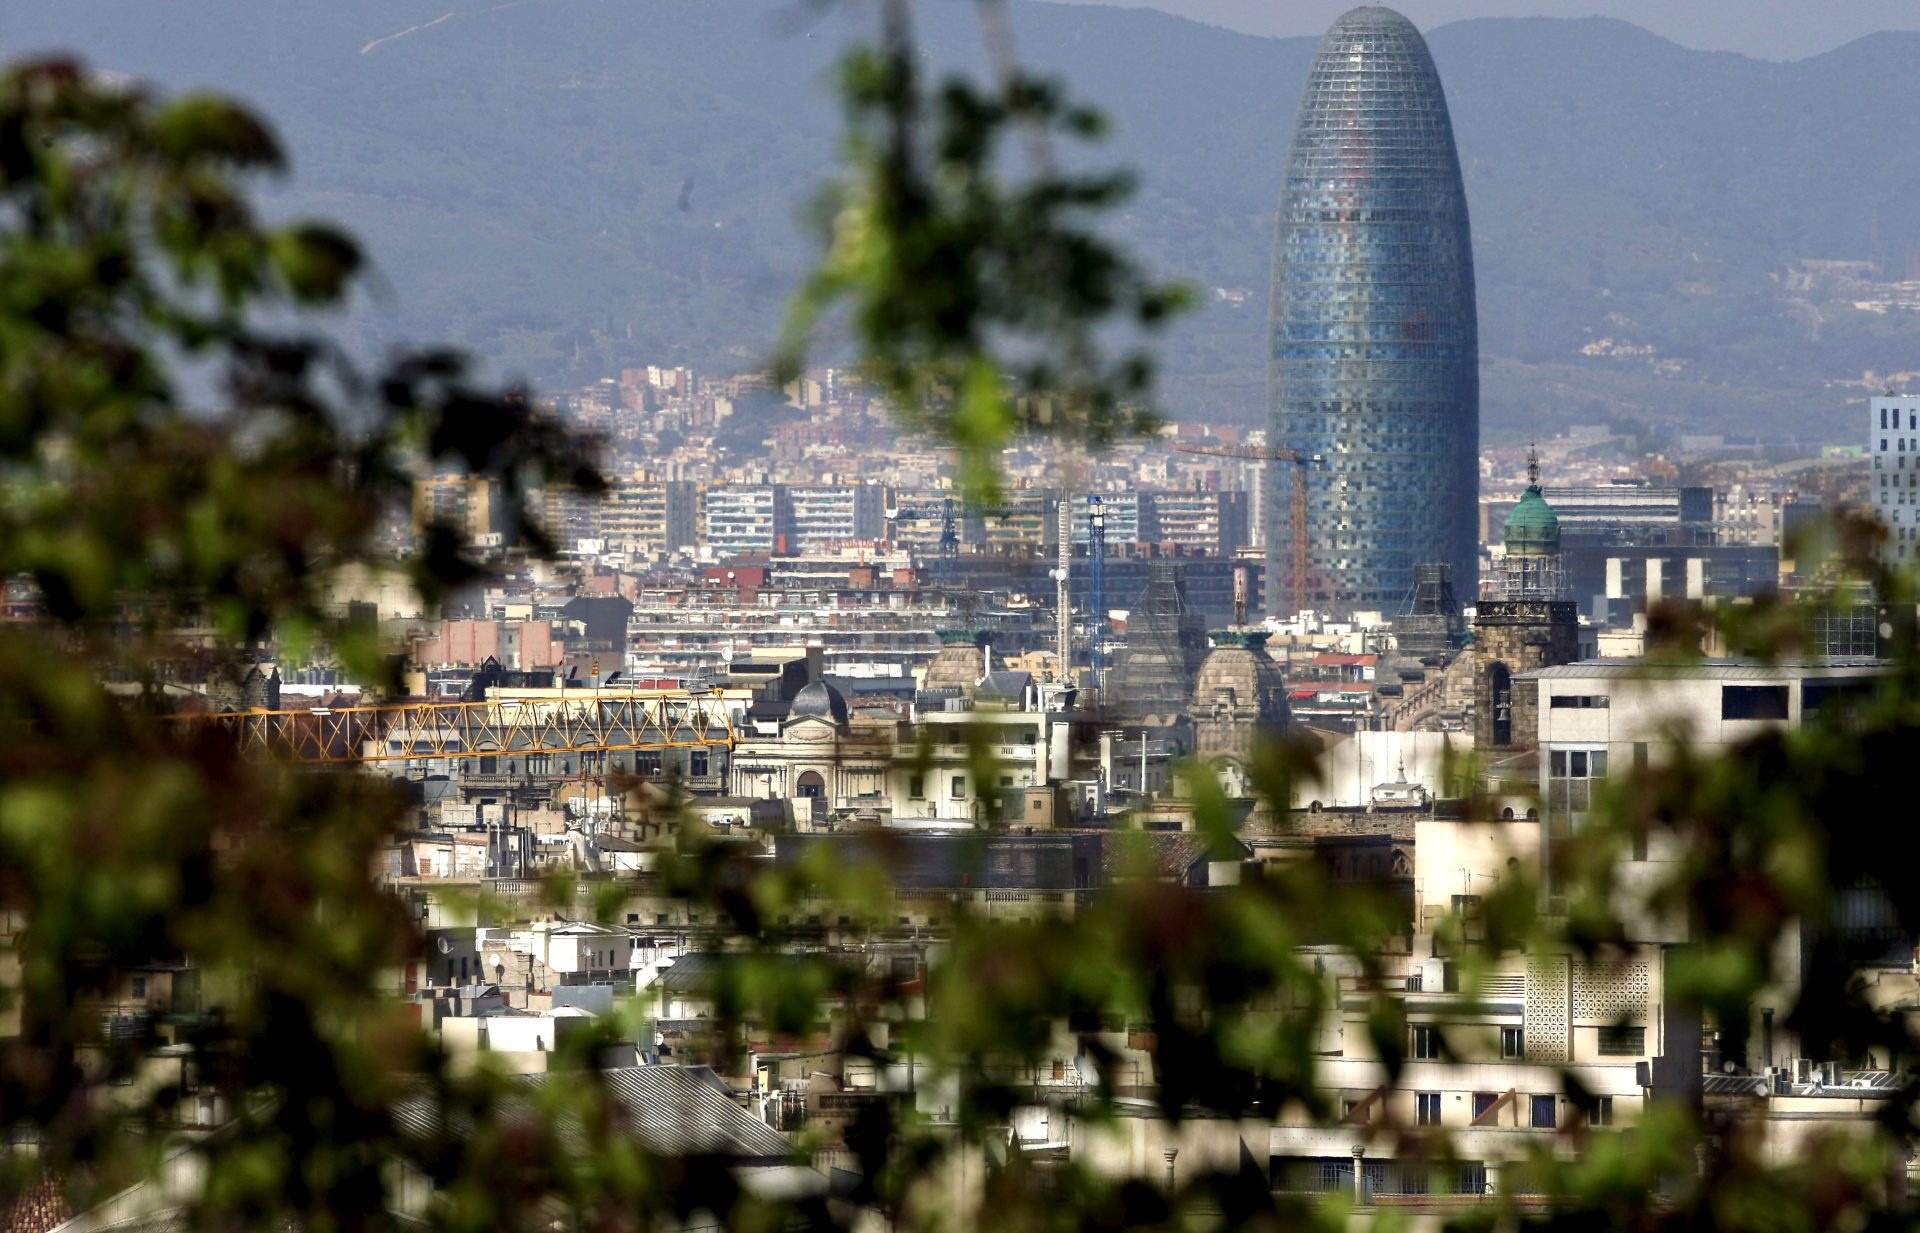 Barcelona és la novena ciutat més resilient del món i la vuitena més atractiva per treballar a l'estranger